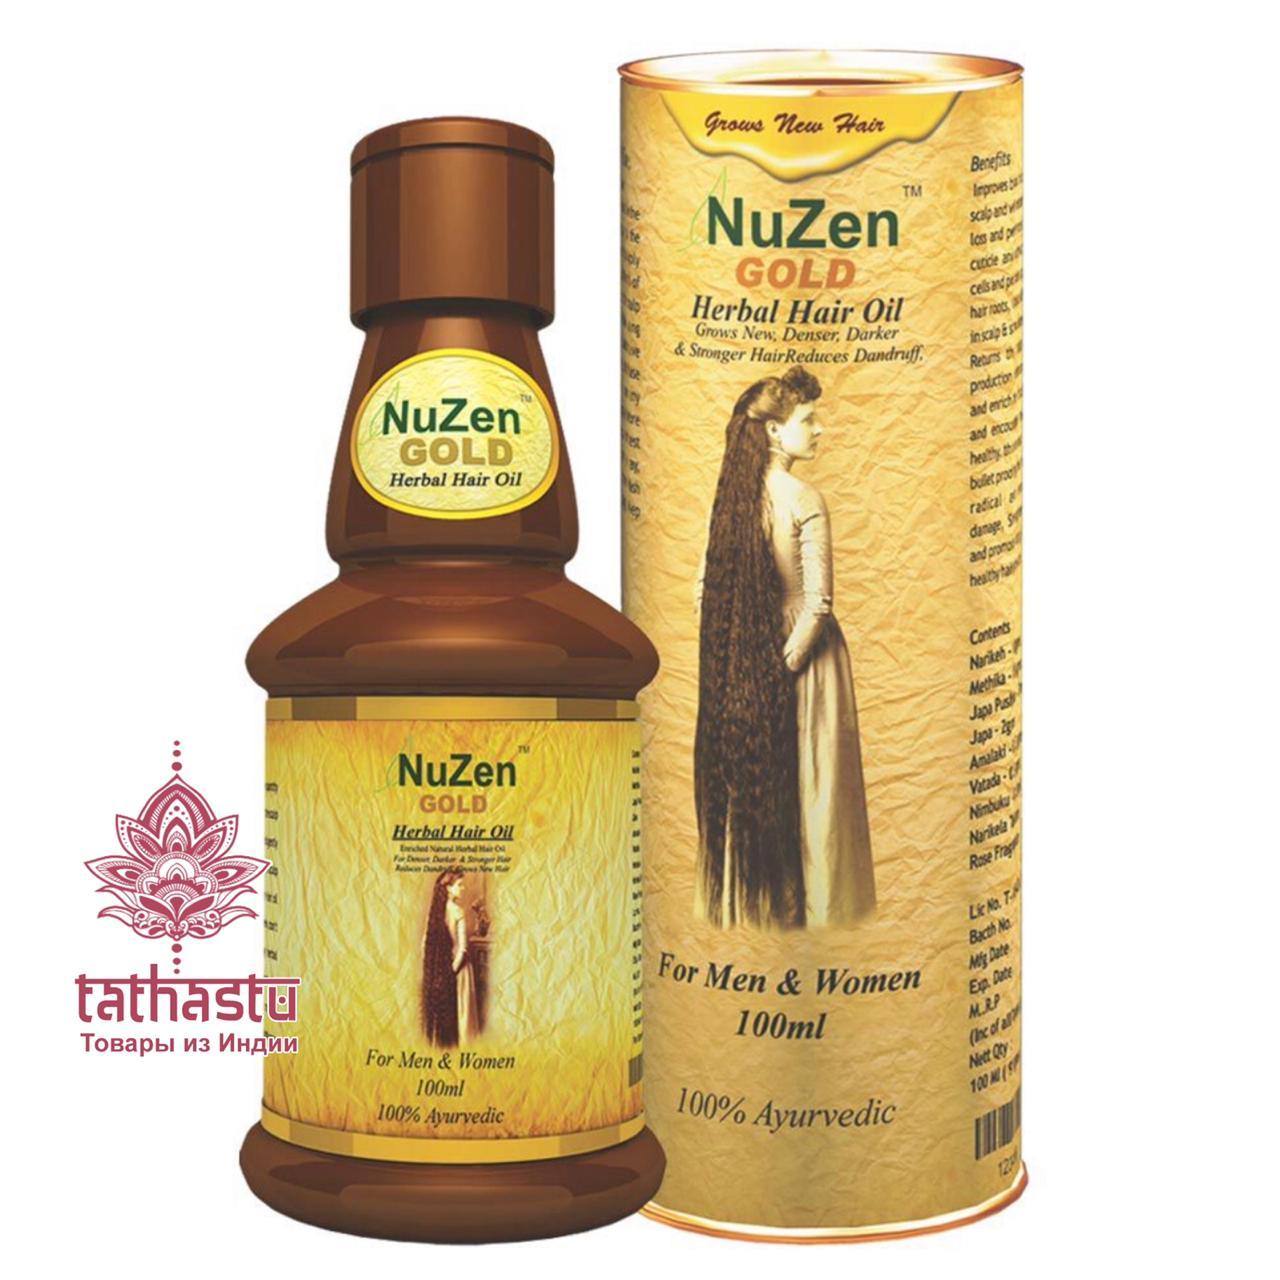 NuZen Gold: оздоровление волос силой природы. Tathastu товары и индии